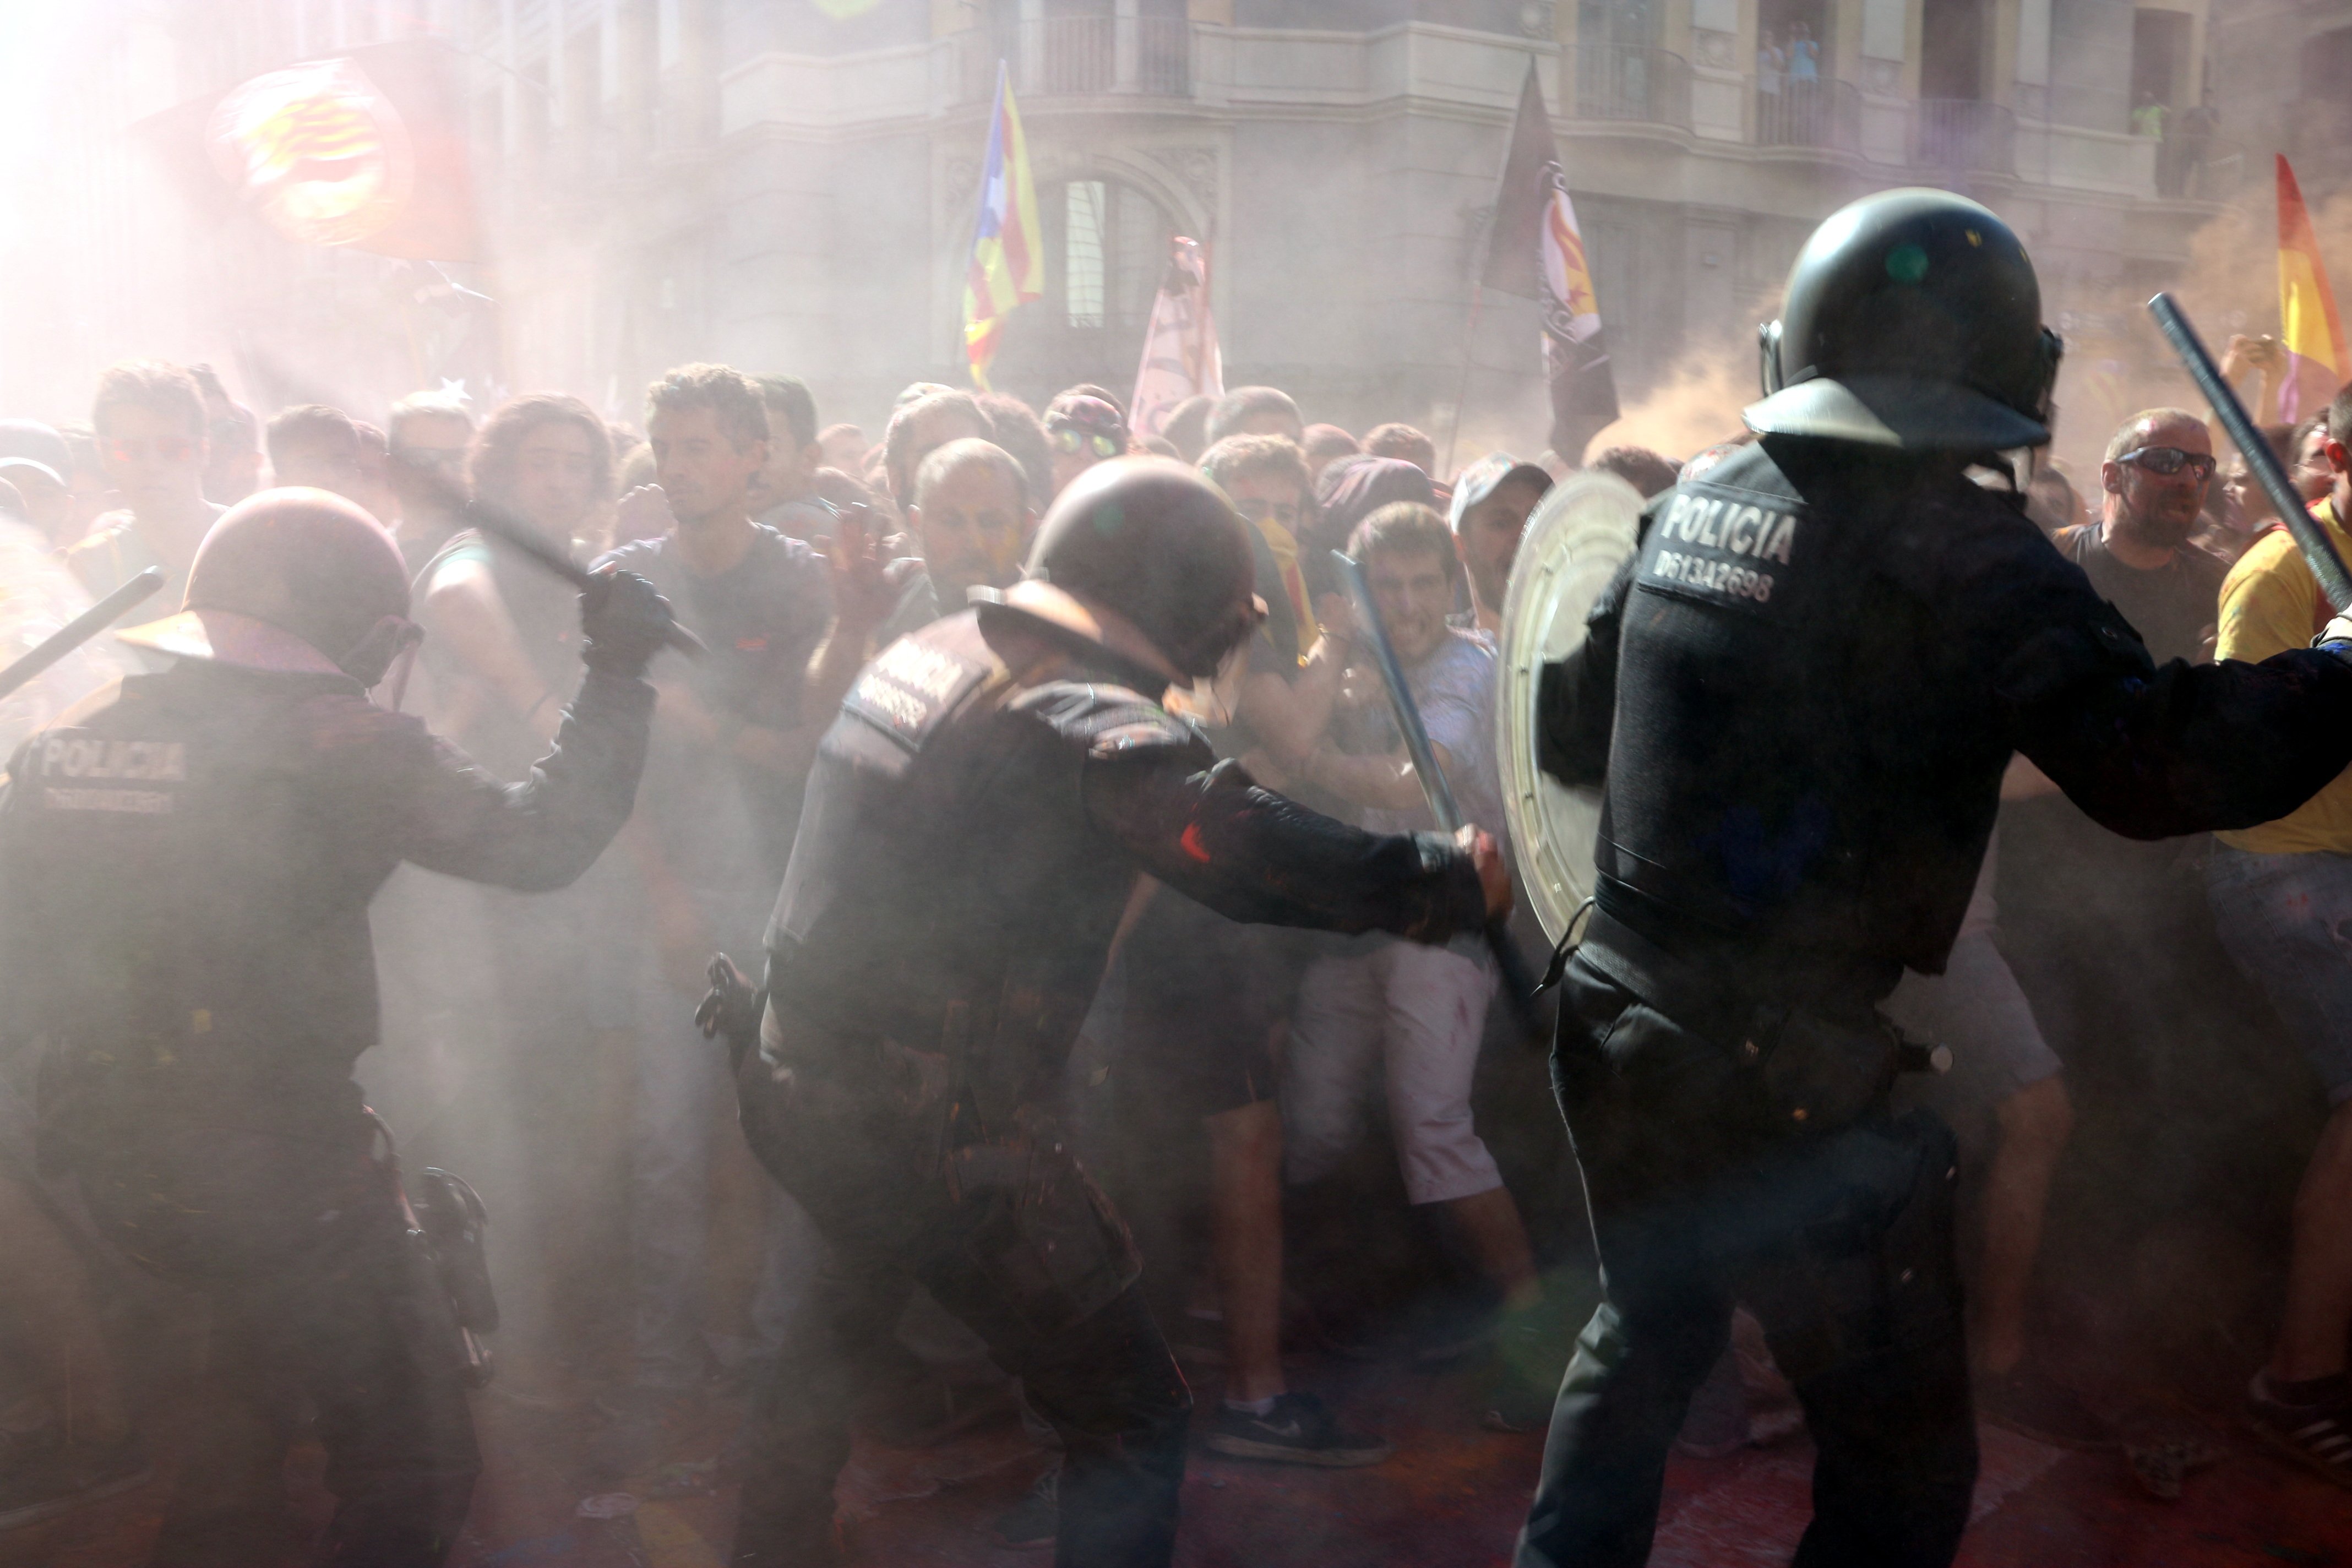 Mossos per la República creu que l'acció policial va ser "del tot proporcional"